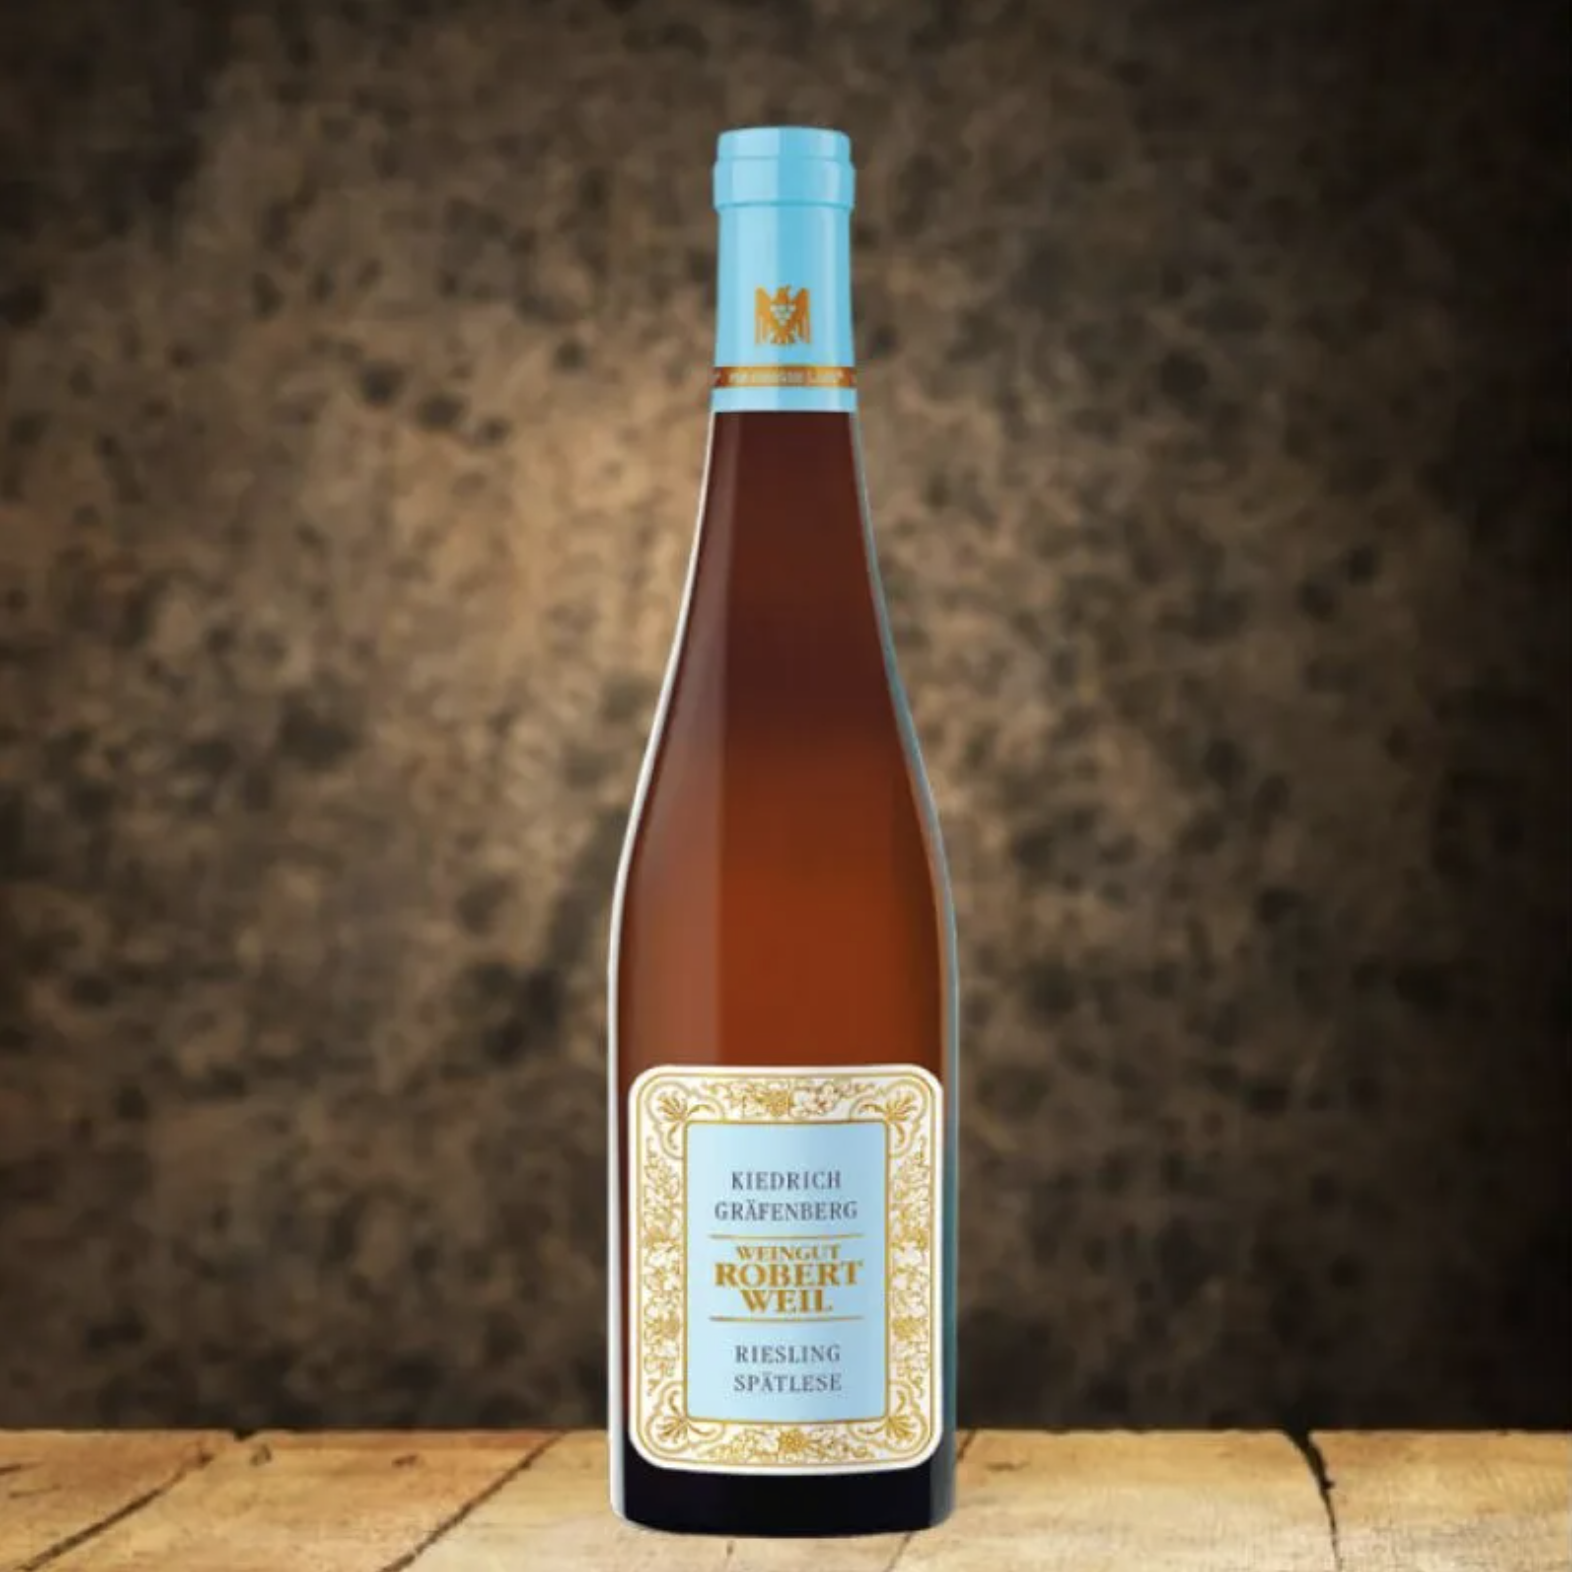 2019 羅伯威爾酒莊遲摘級微甜白酒 2019 Robert Weil Riesling Spatlese Rheingau